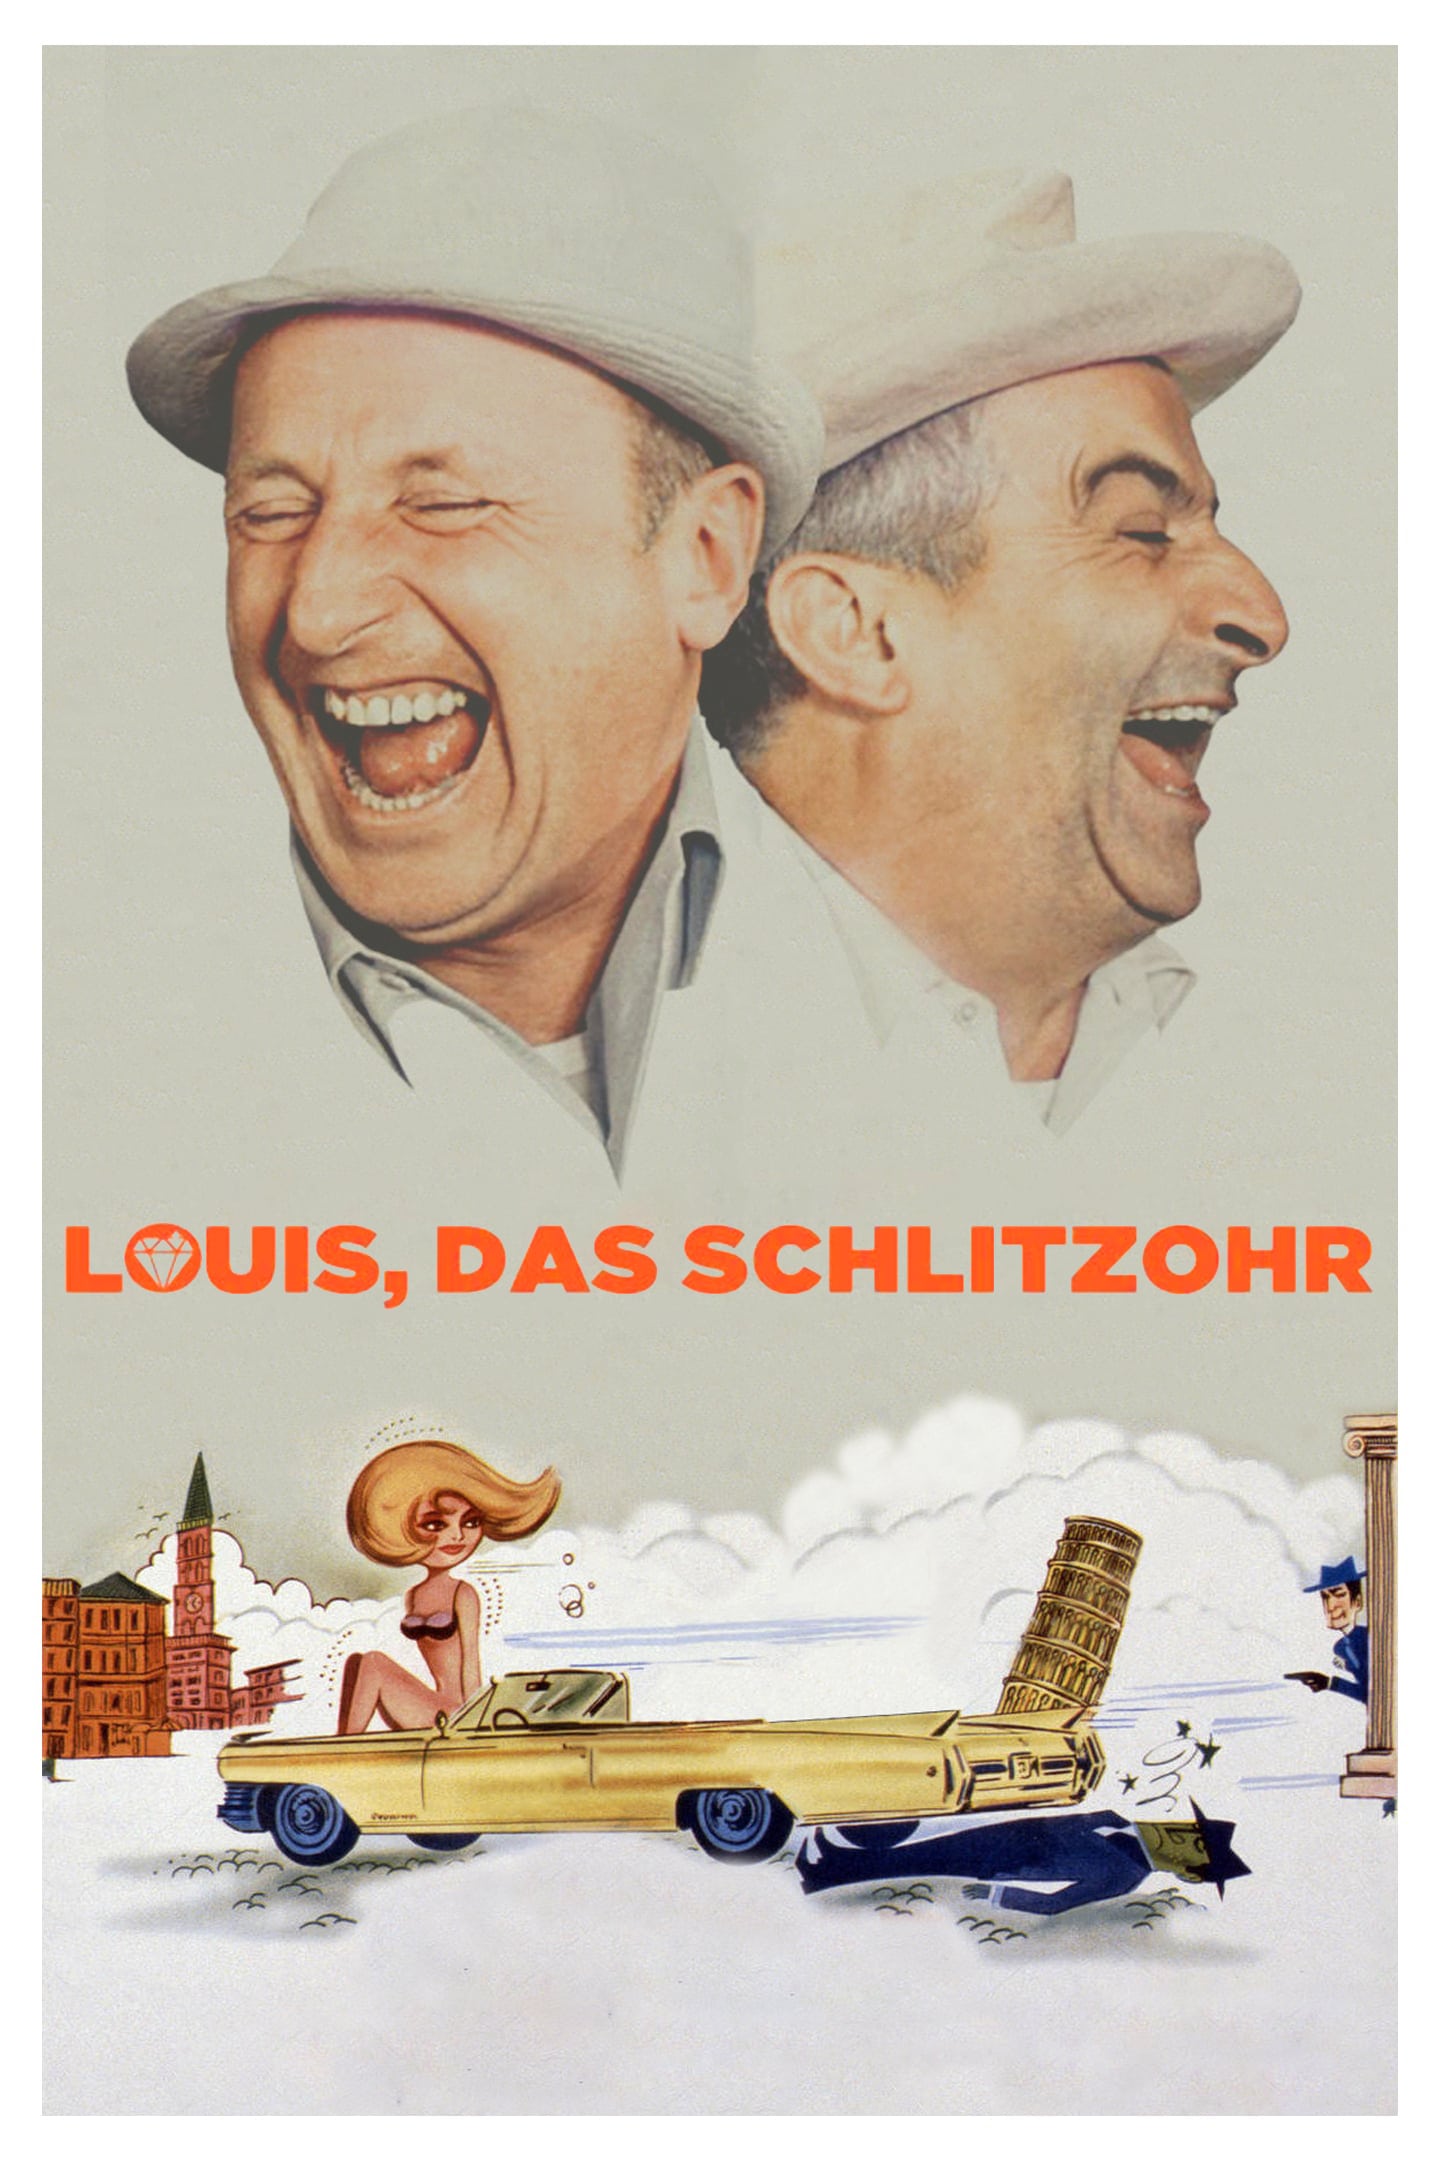 Plakat von "Louis, das Schlitzohr"